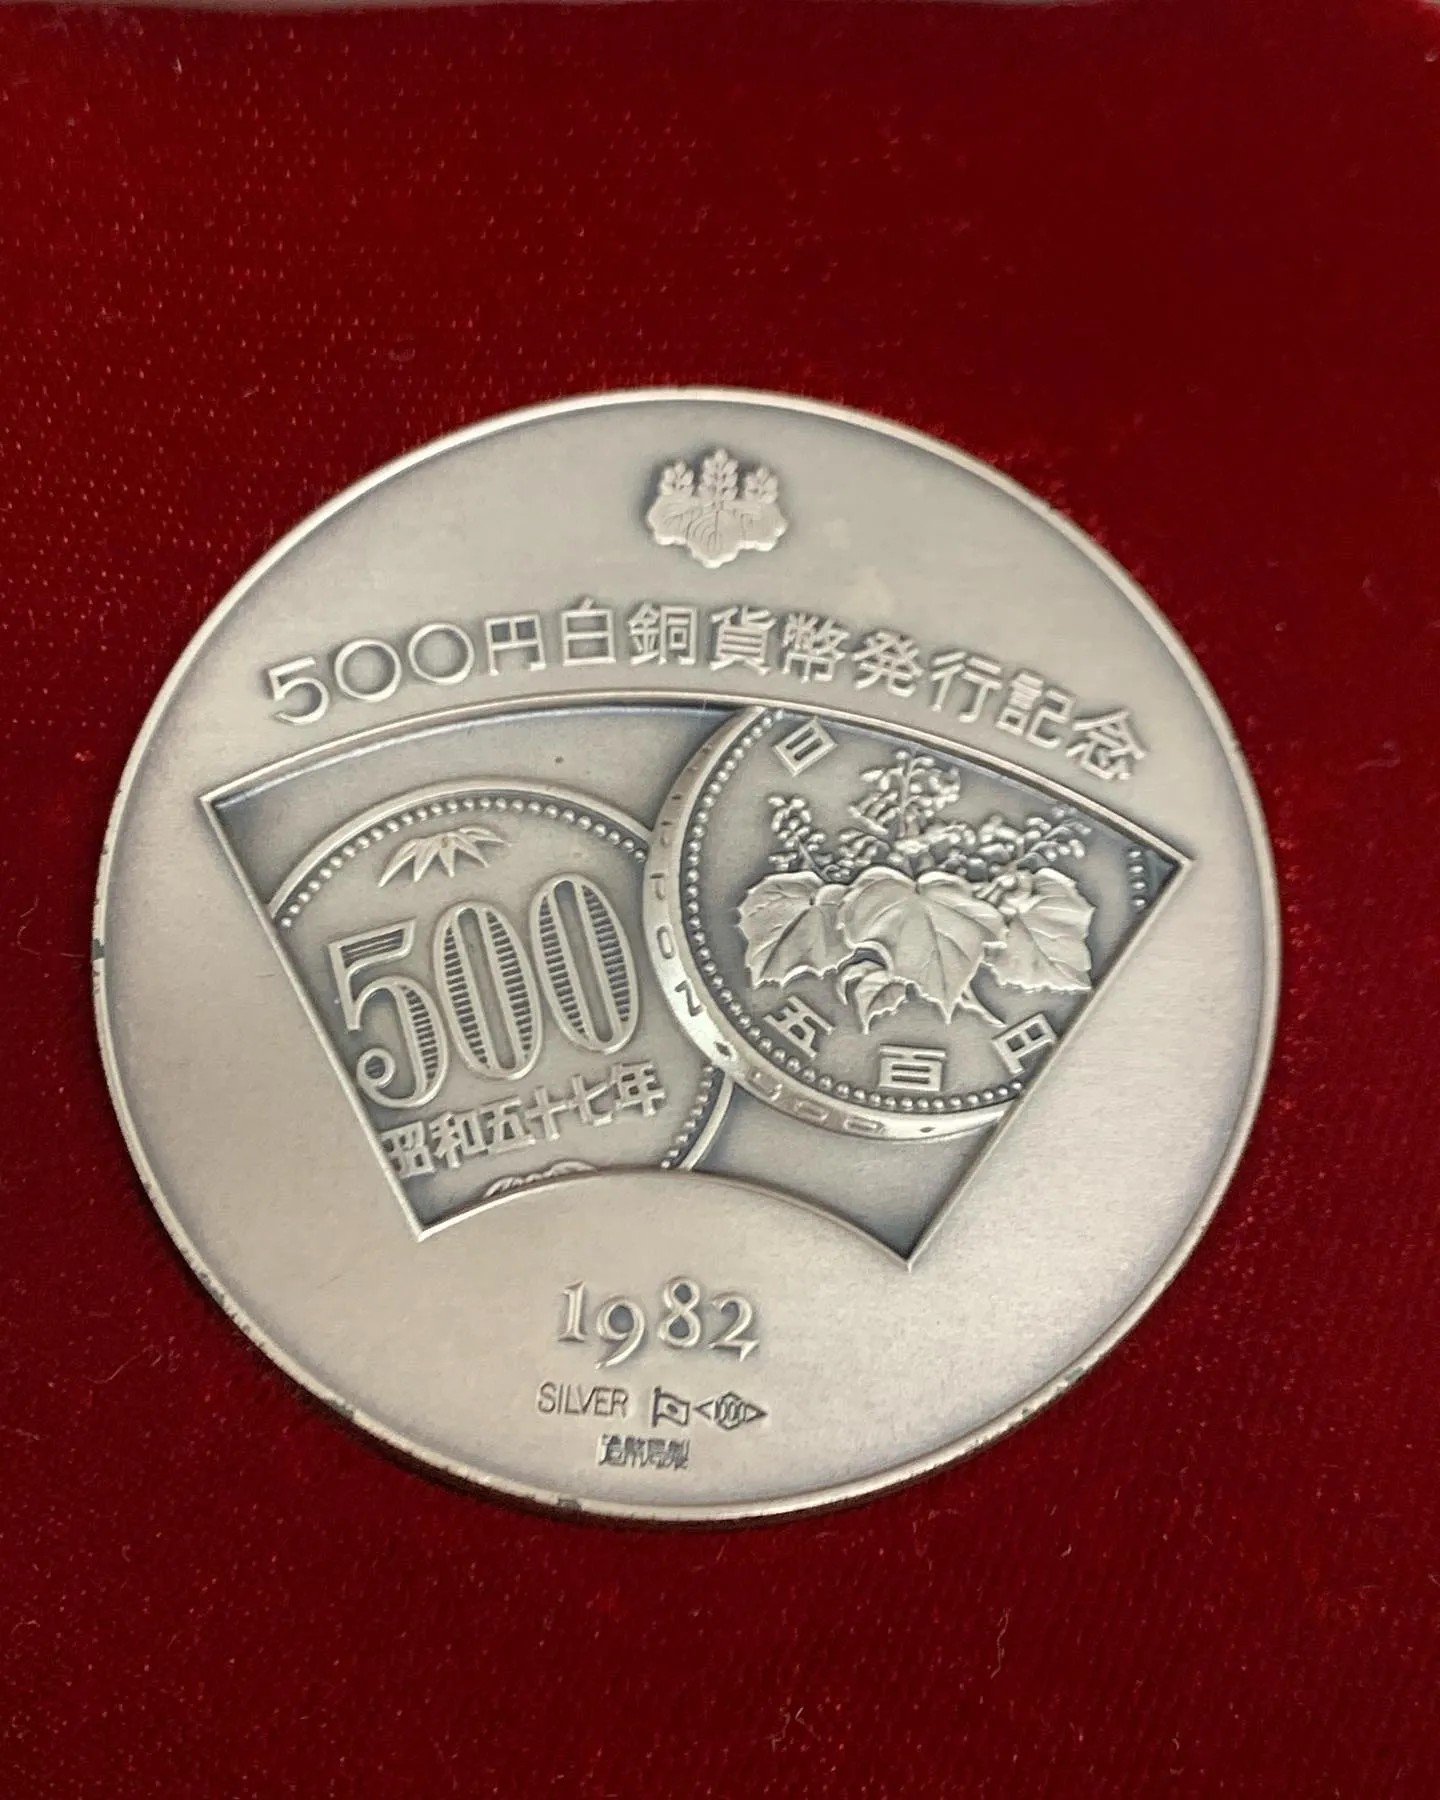 500円白銅貨幣発行記念メダルの買取もお任せください ...